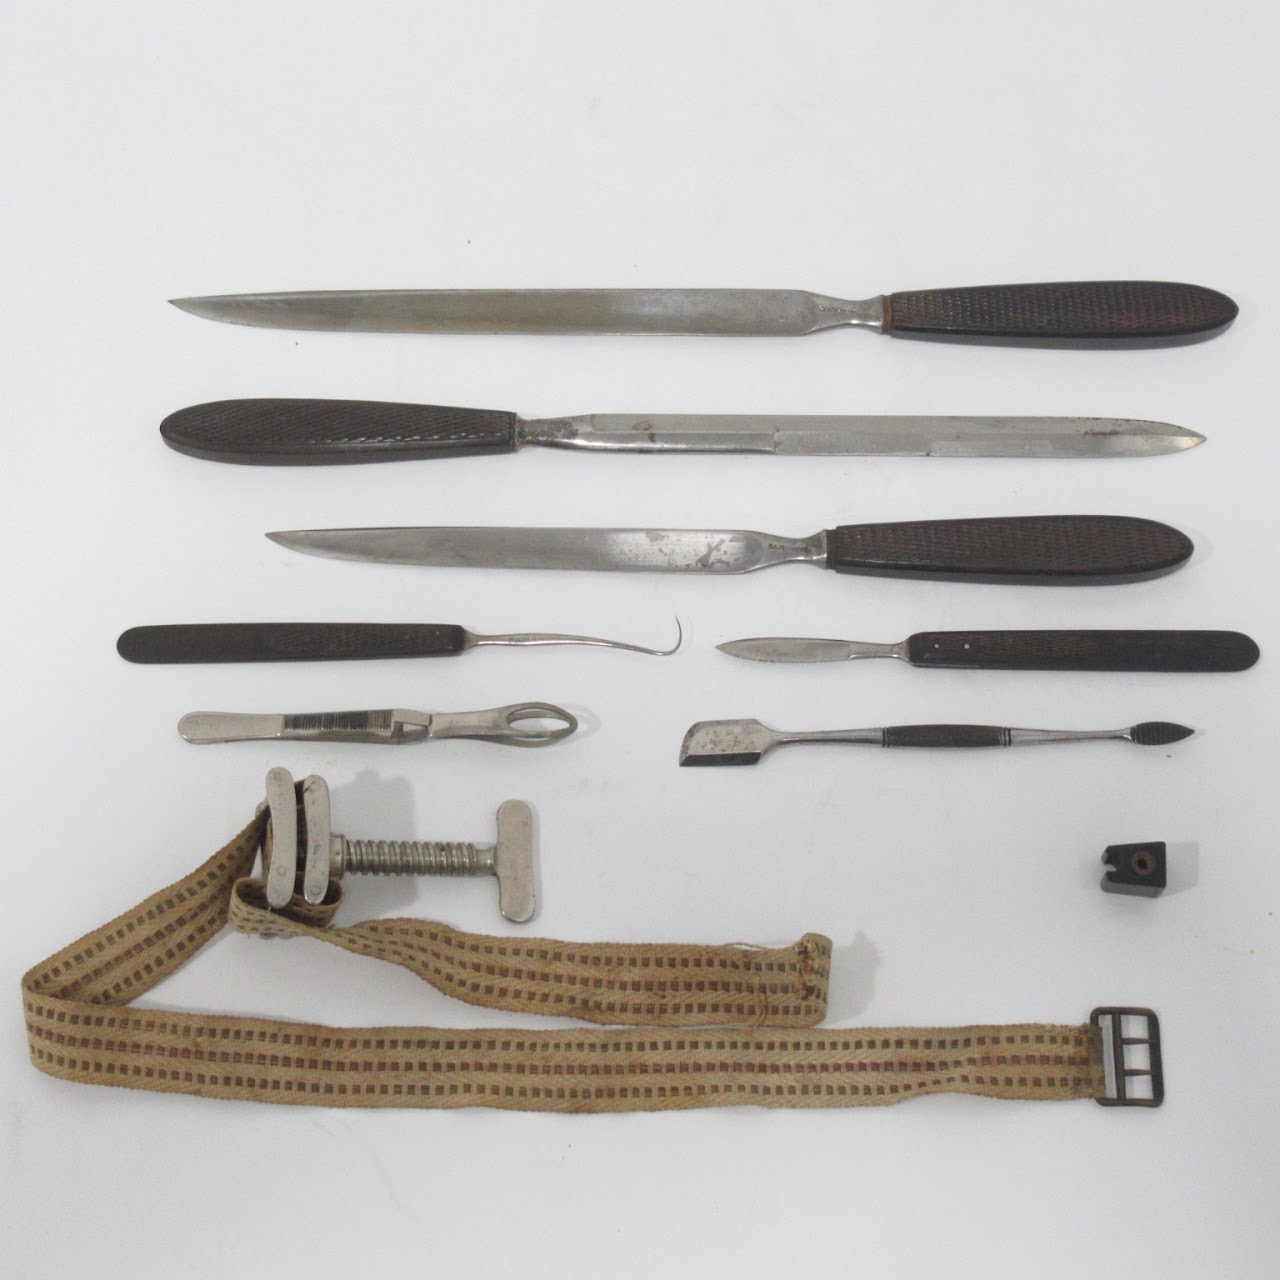 A.L. Hernstein Civil War Era Surgical Instrument Set